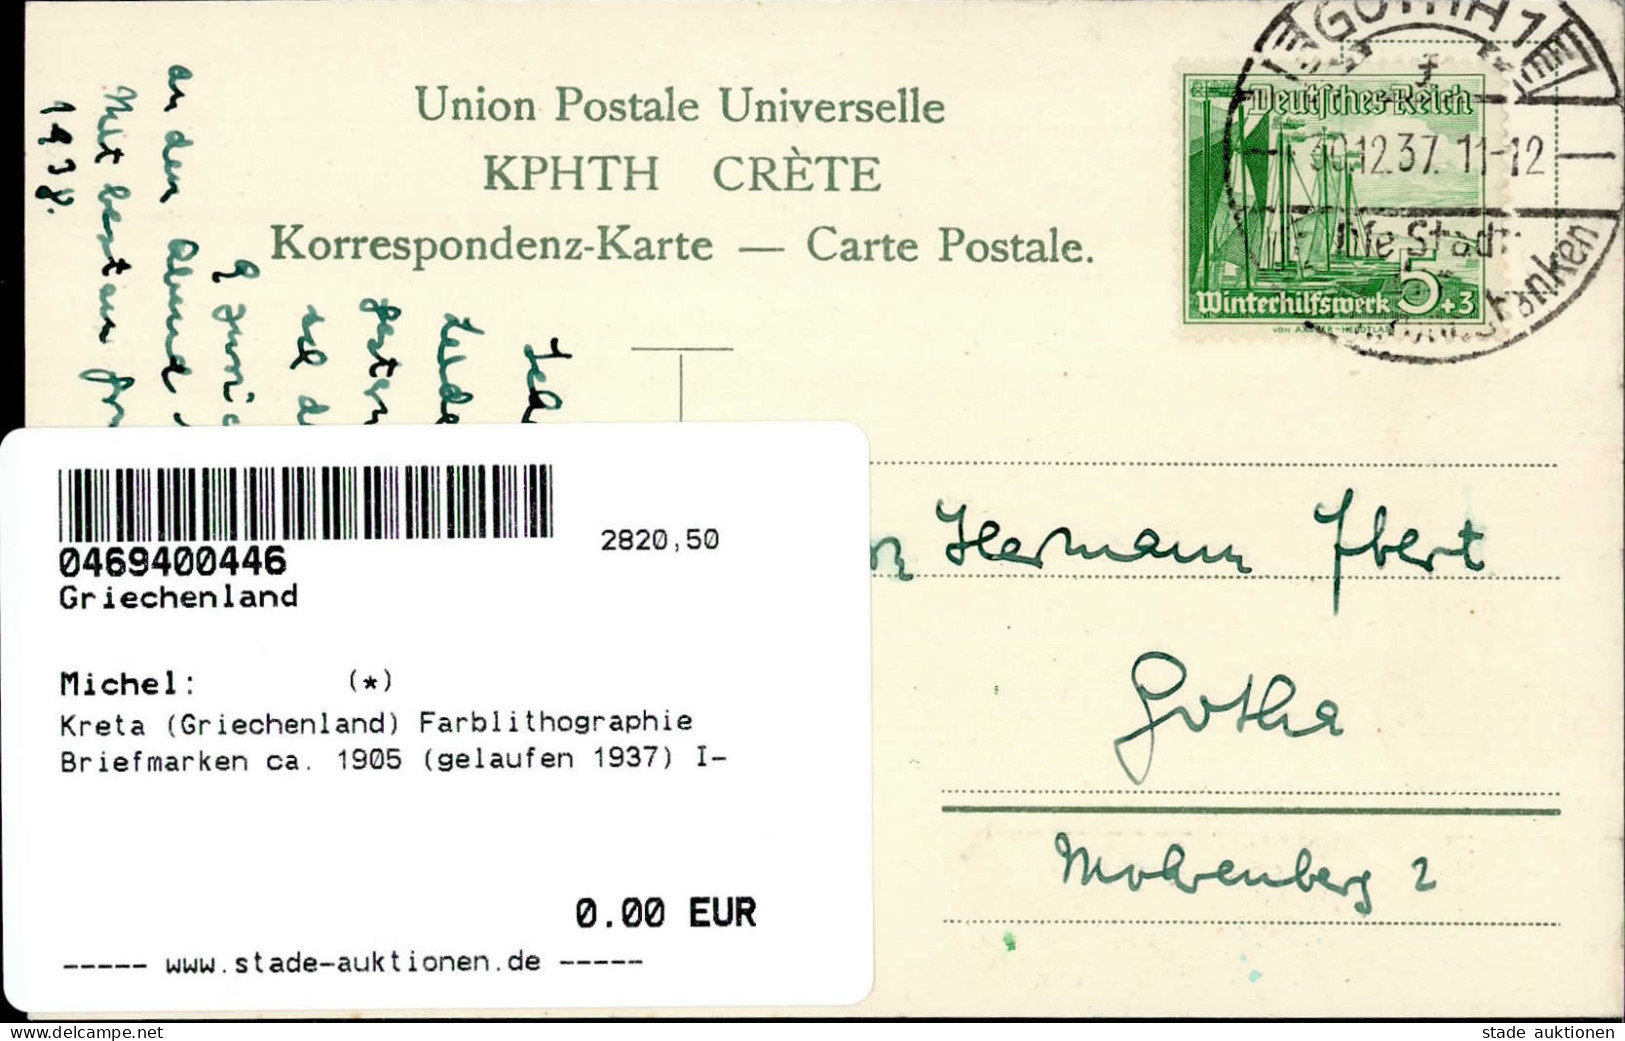 Kreta (Griechenland) Farblithographie Briefmarken Ca. 1905 (gelaufen 1937) I- - Grèce